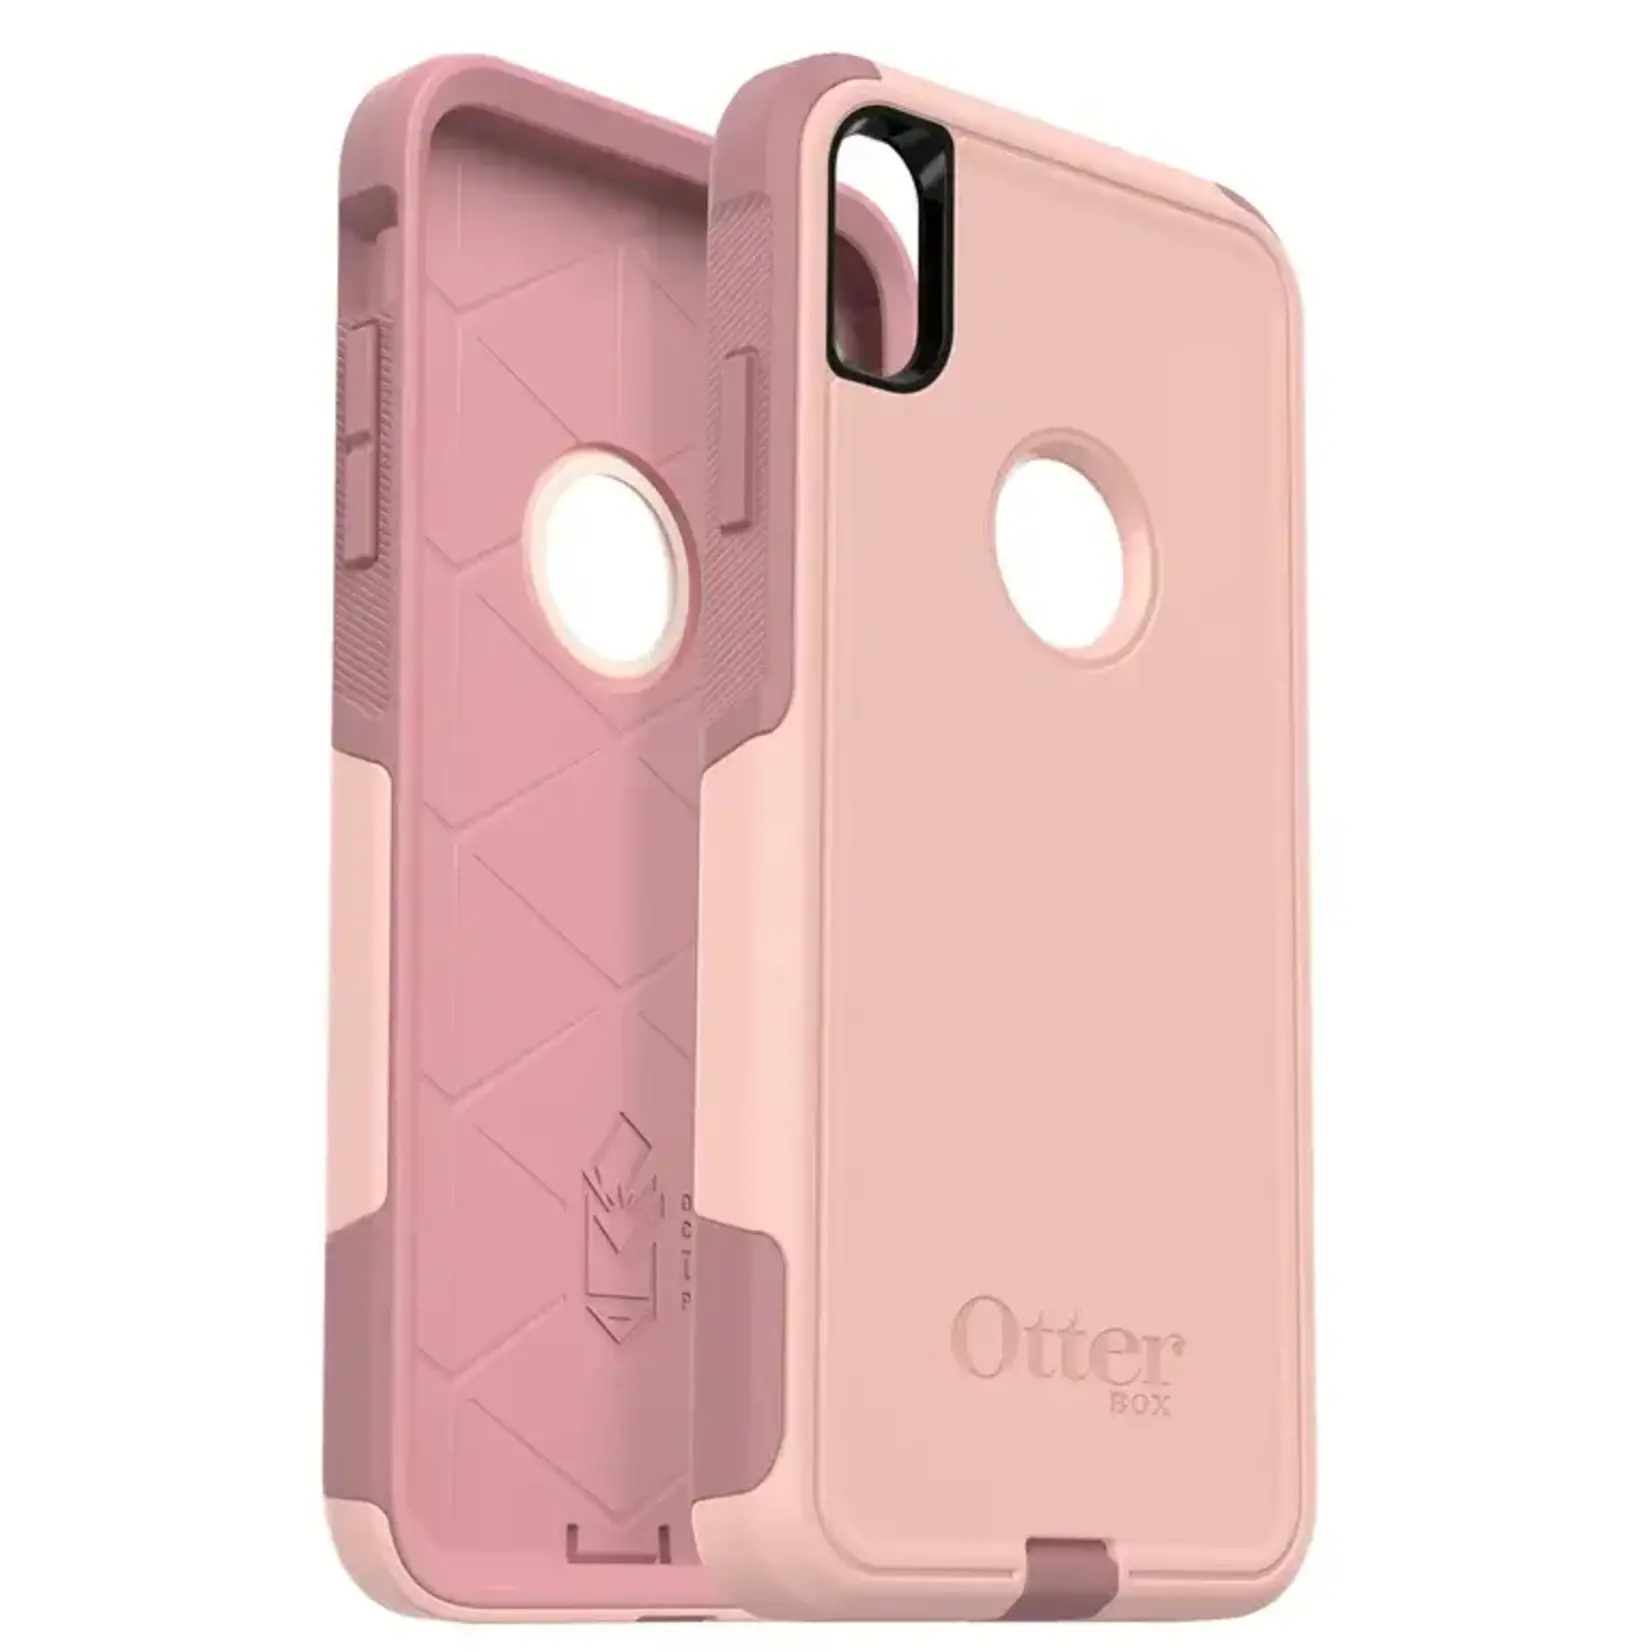 Apple ÉTUI  IPHONE XS MAX - Otterbox commuter case pink